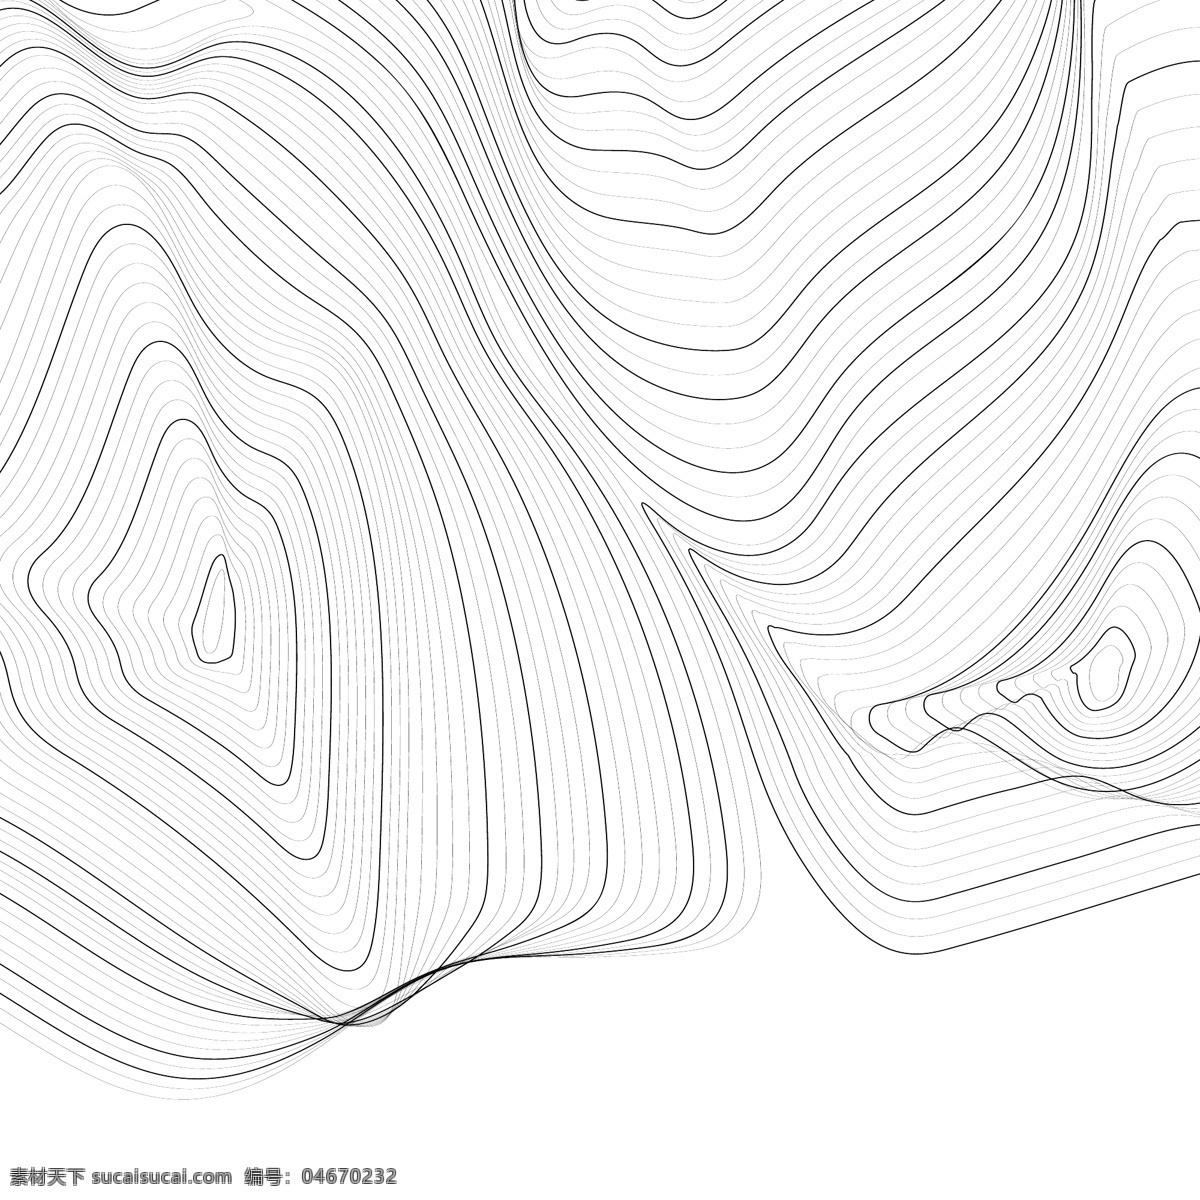 抽象 轮廓 线 底纹 抽象轮廓线图 艺术 背景 黑色 等高线 曲线 细节 大地测量学 地域 地理 图形 高度 图解的 土地 单色 运动 山 图案 形状 表面 纹理 底纹边框 抽象底纹